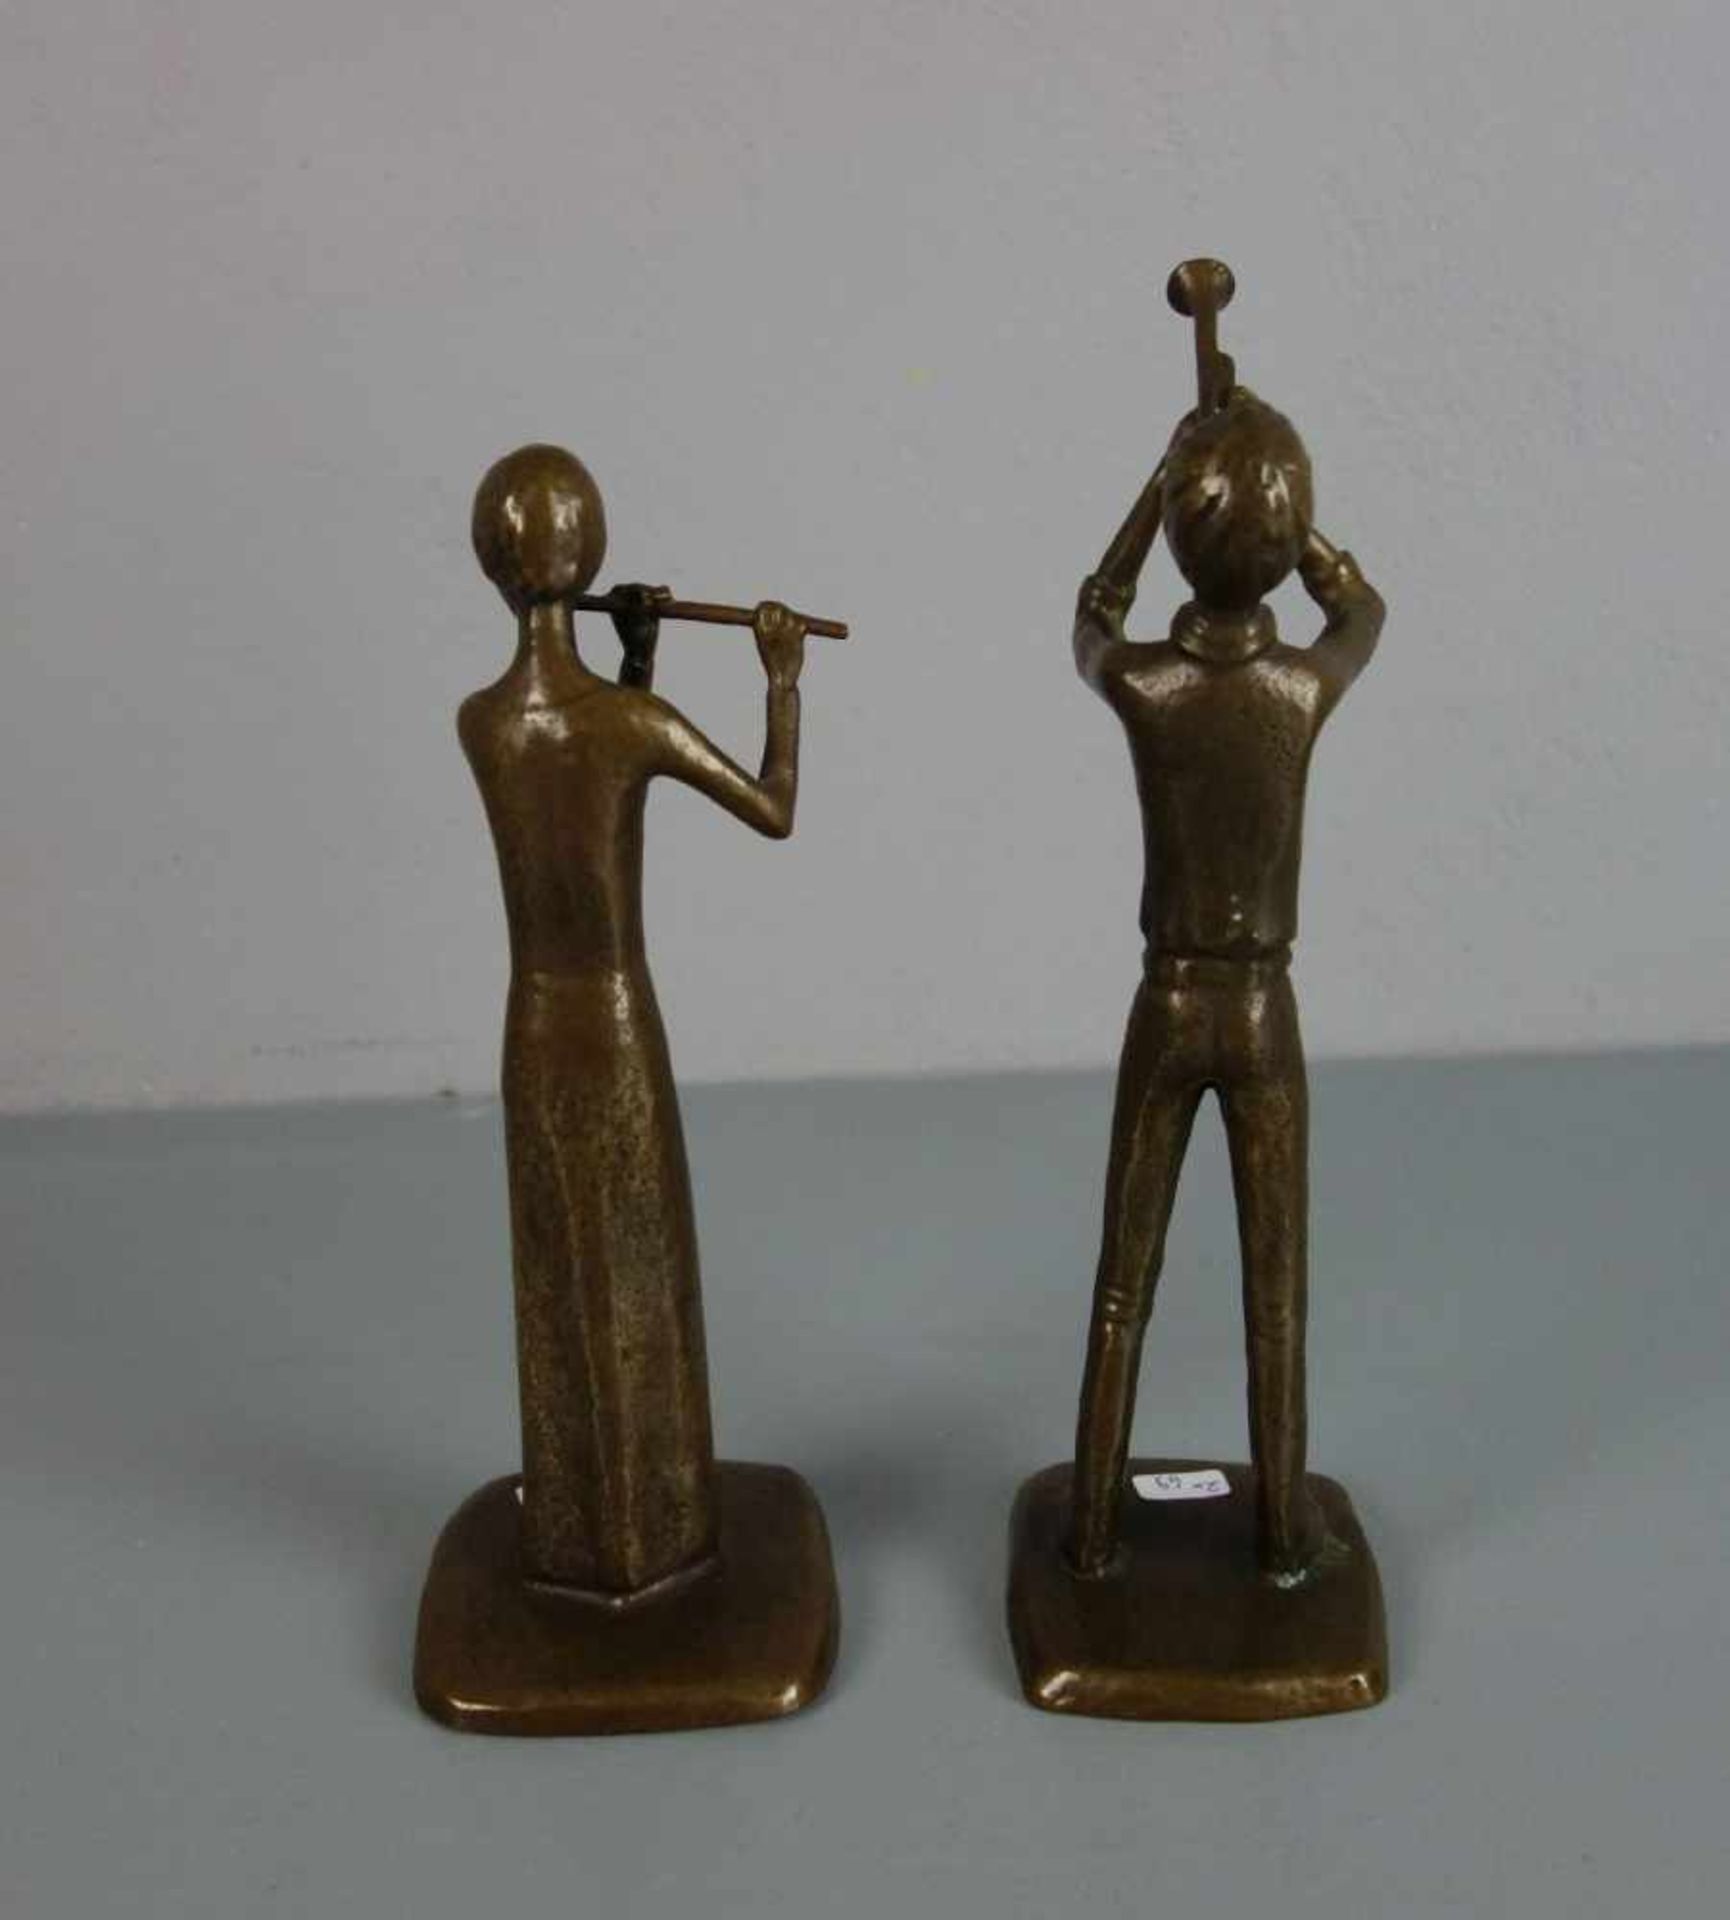 ANONYMER BILDHAUER (20. / 21. JH.), Paar Bronze - Skulpturen: "Trompeter" und "Flötistin" / - Image 3 of 4